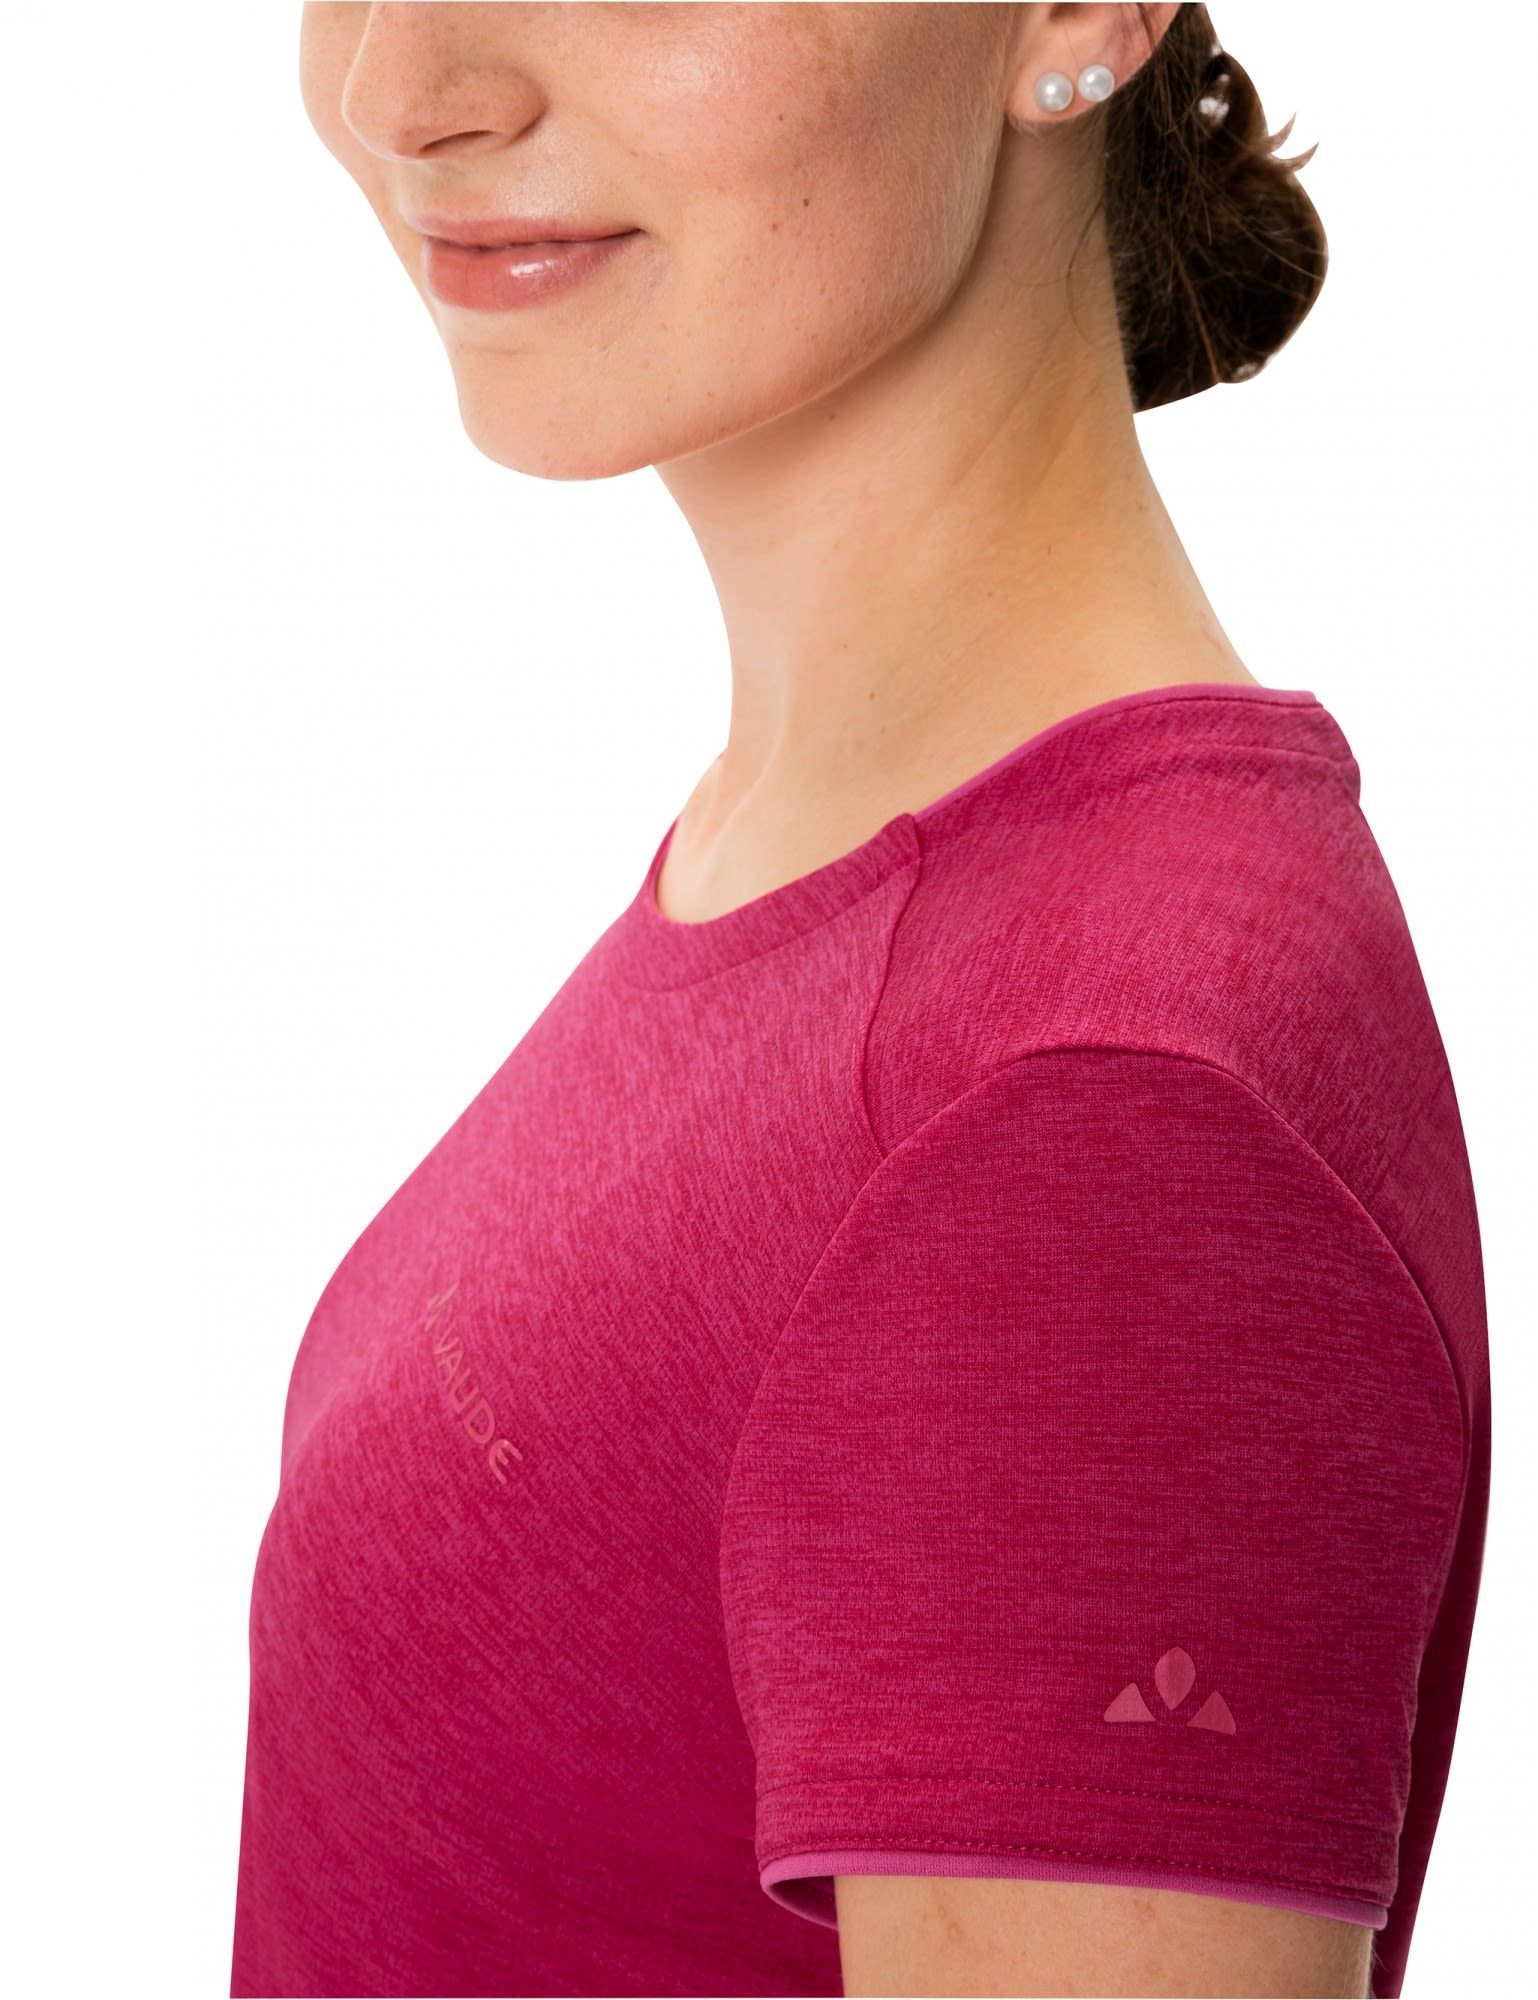 Womens T-Shirt Damen - Kurzarm-Shirt Crimson Essential Vaude T-shirt Crimson VAUDE